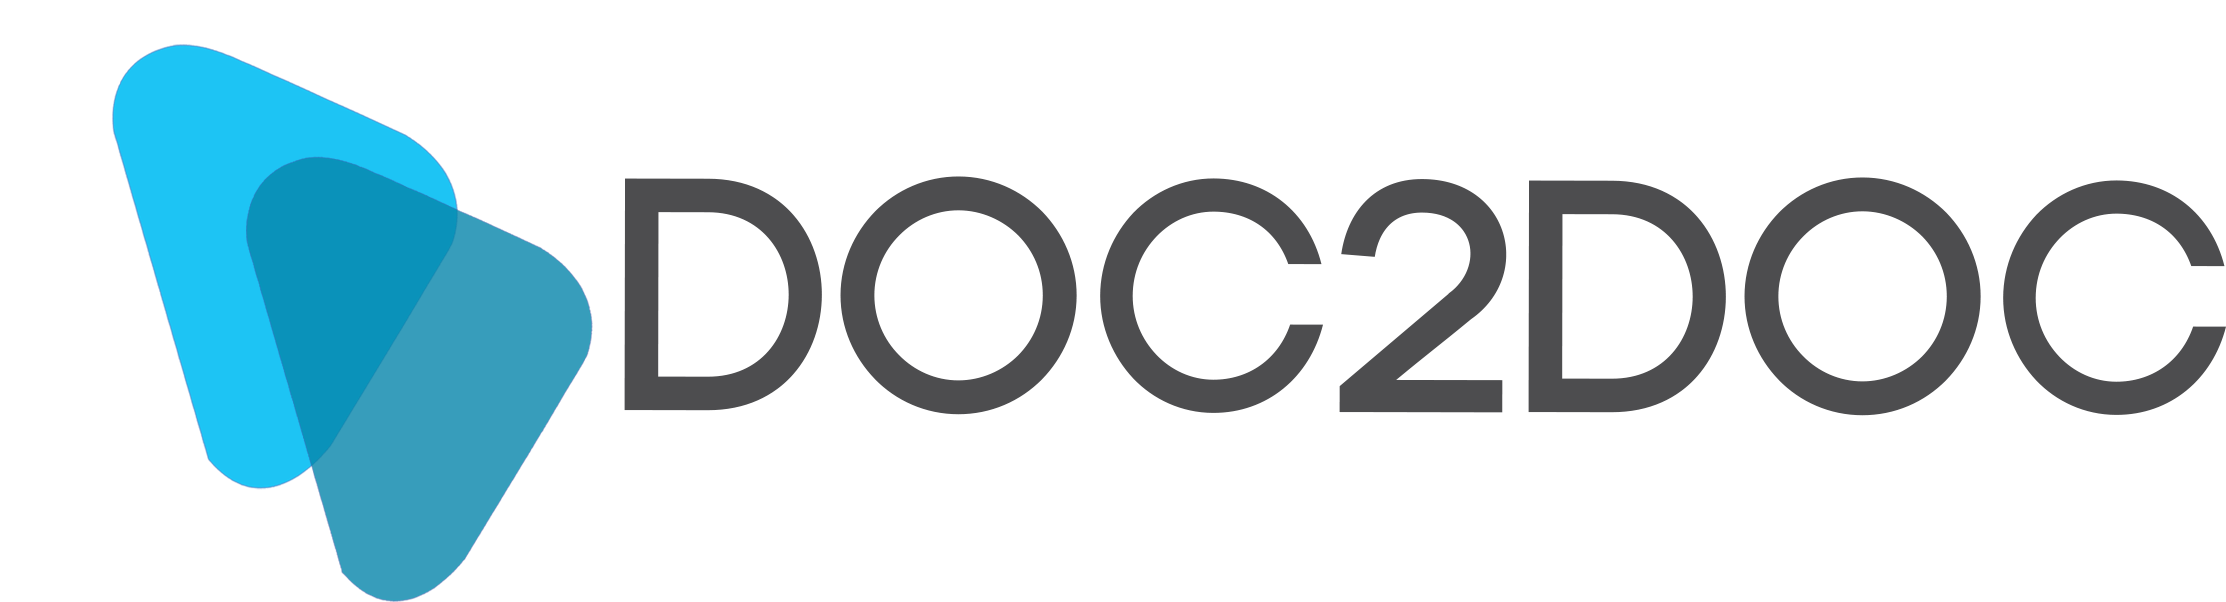 DOC2DOC Lending Logo